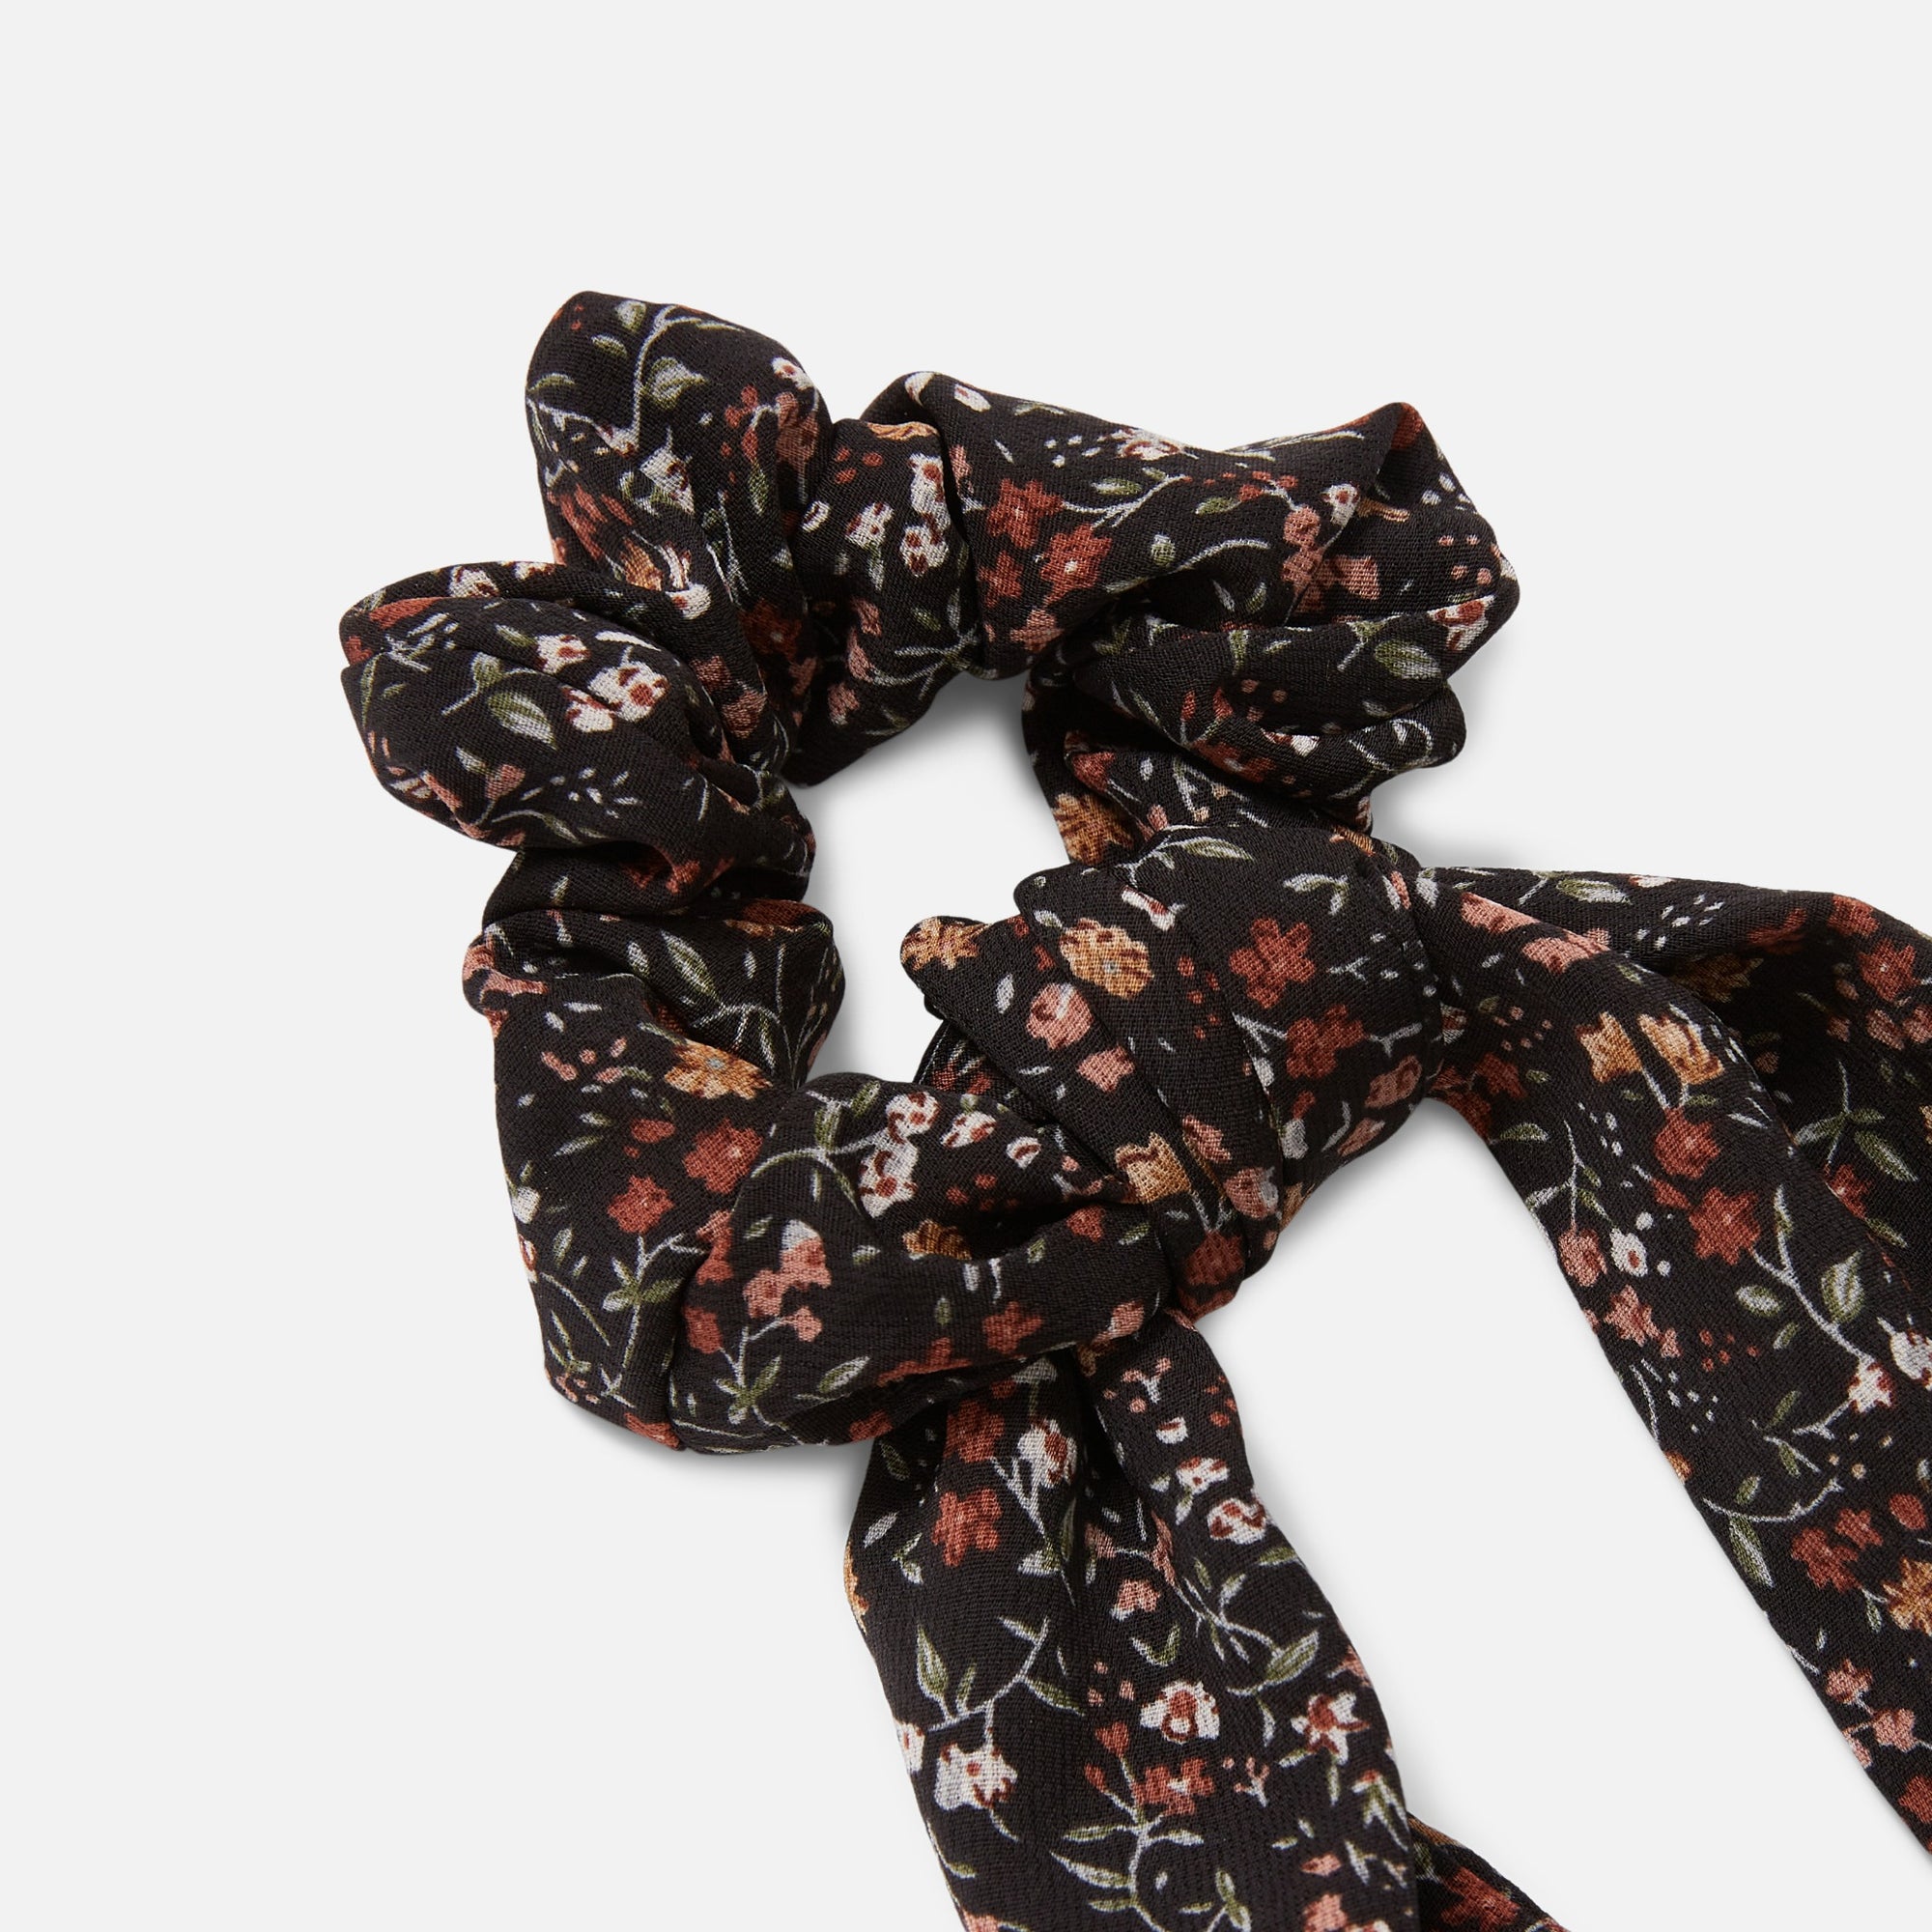 Black floral print scrunchies with loop